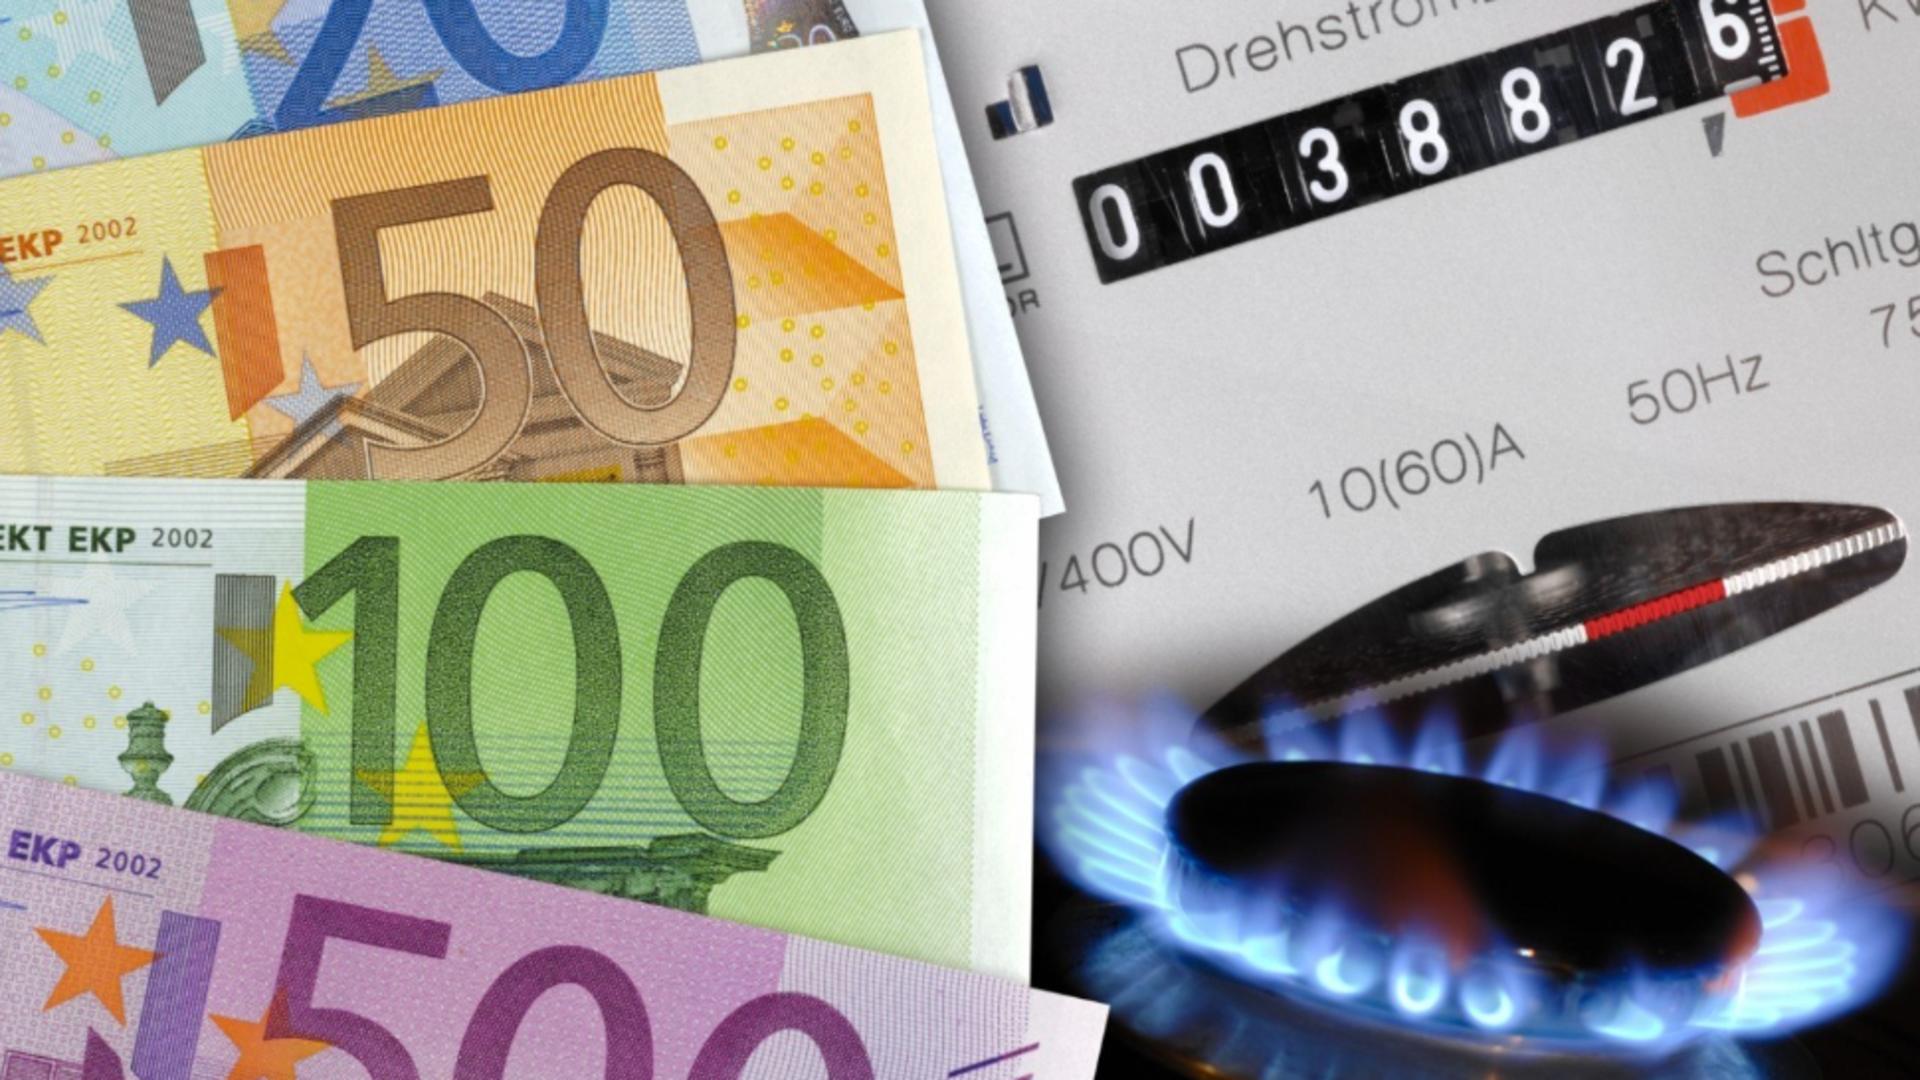 Europa, aproape de o criză a gazelor în 2023 - Avertismentul Agenției Internaționale de Energie: Scenariul negru pentru iarnă